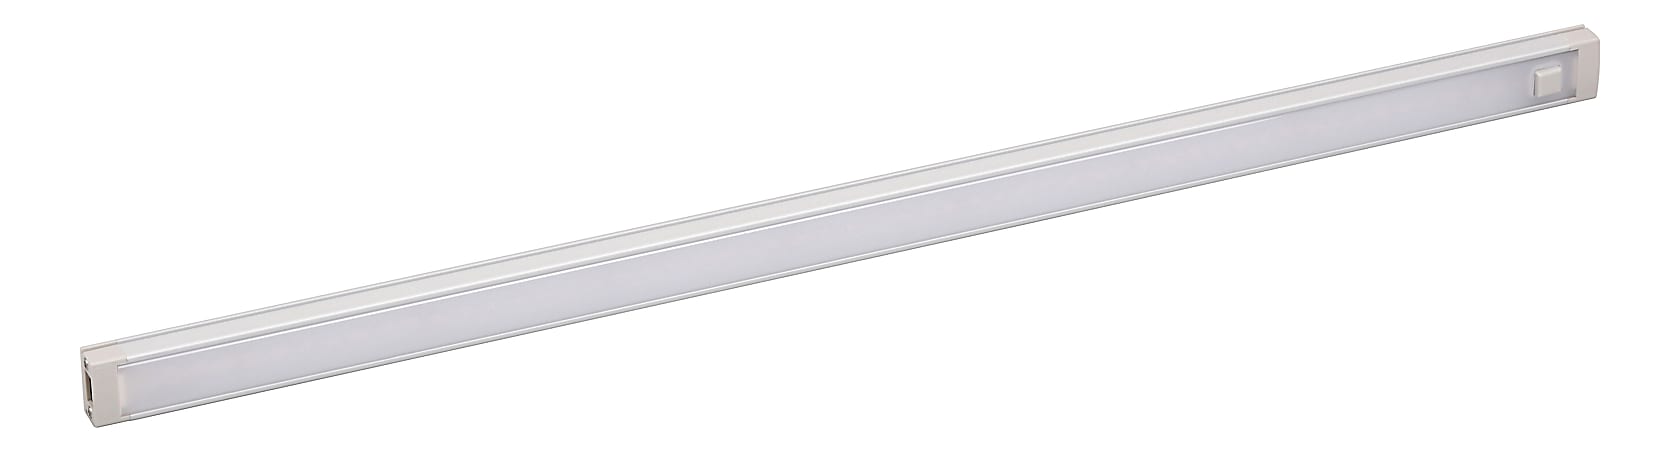 Black+Decker 1-Bar Under-Cabinet LED Lighting Kit, 18", Warm White